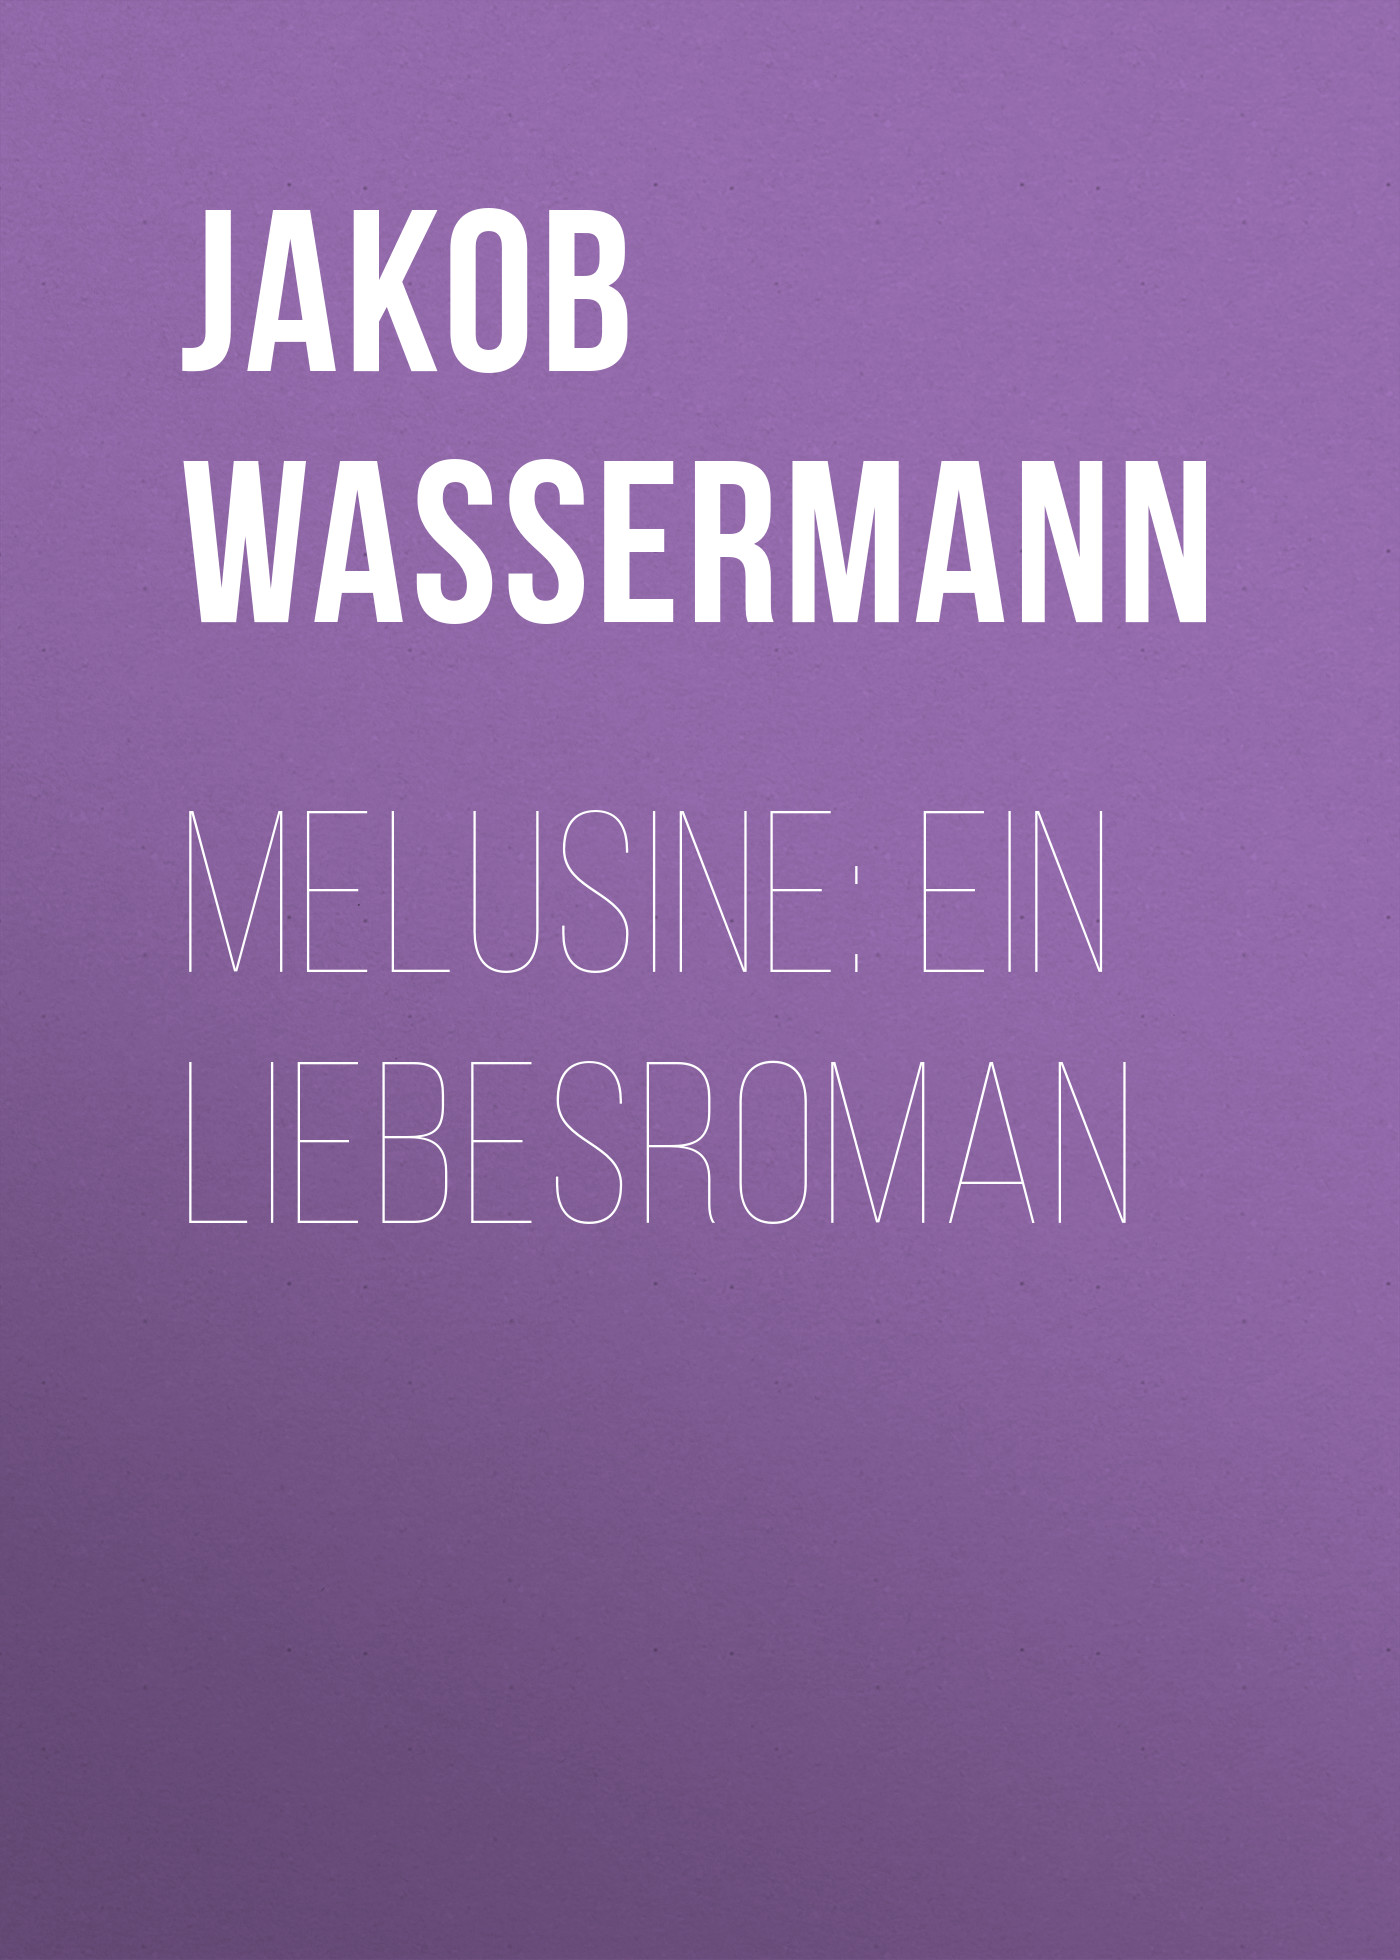 Книга Melusine: Ein Liebesroman из серии , созданная Jakob Wassermann, может относится к жанру Зарубежная классика, Литература 19 века, Зарубежная старинная литература. Стоимость электронной книги Melusine: Ein Liebesroman с идентификатором 34337354 составляет 0 руб.